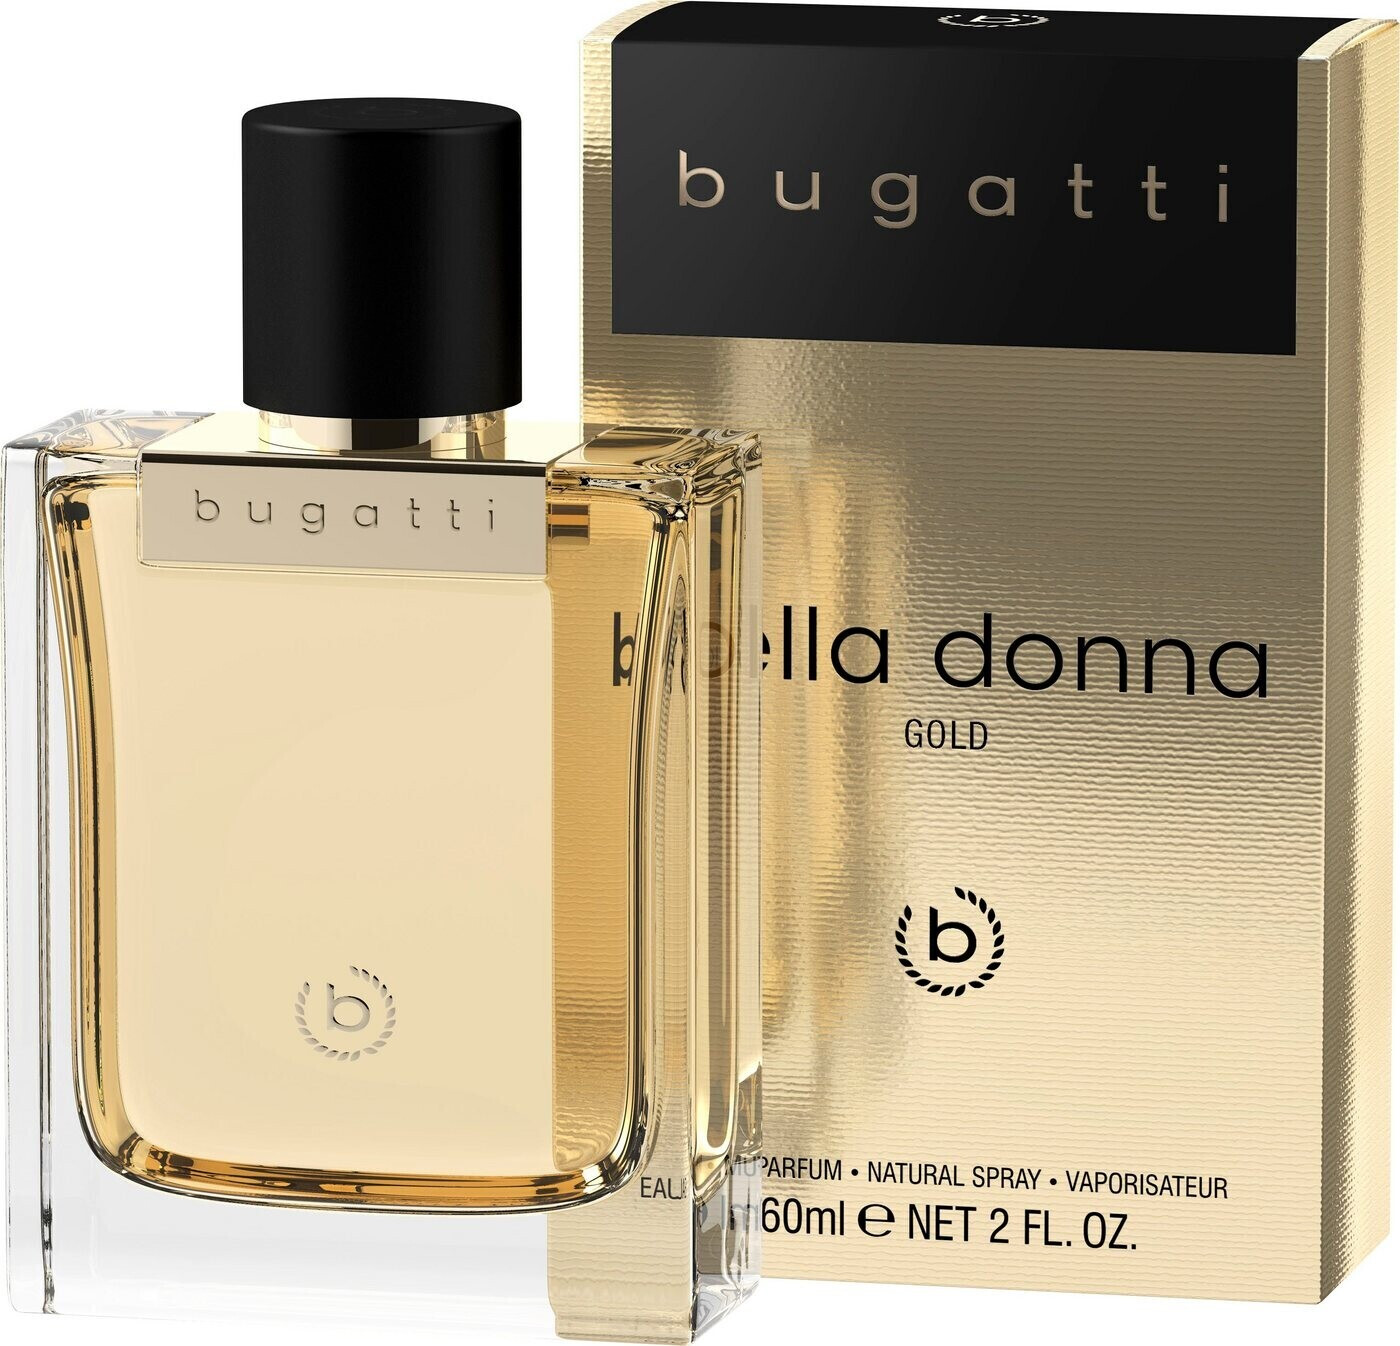 Bugatti Bella bei (60ml) | Parfum Eau Donna 16,99 € ab Gold Preisvergleich de